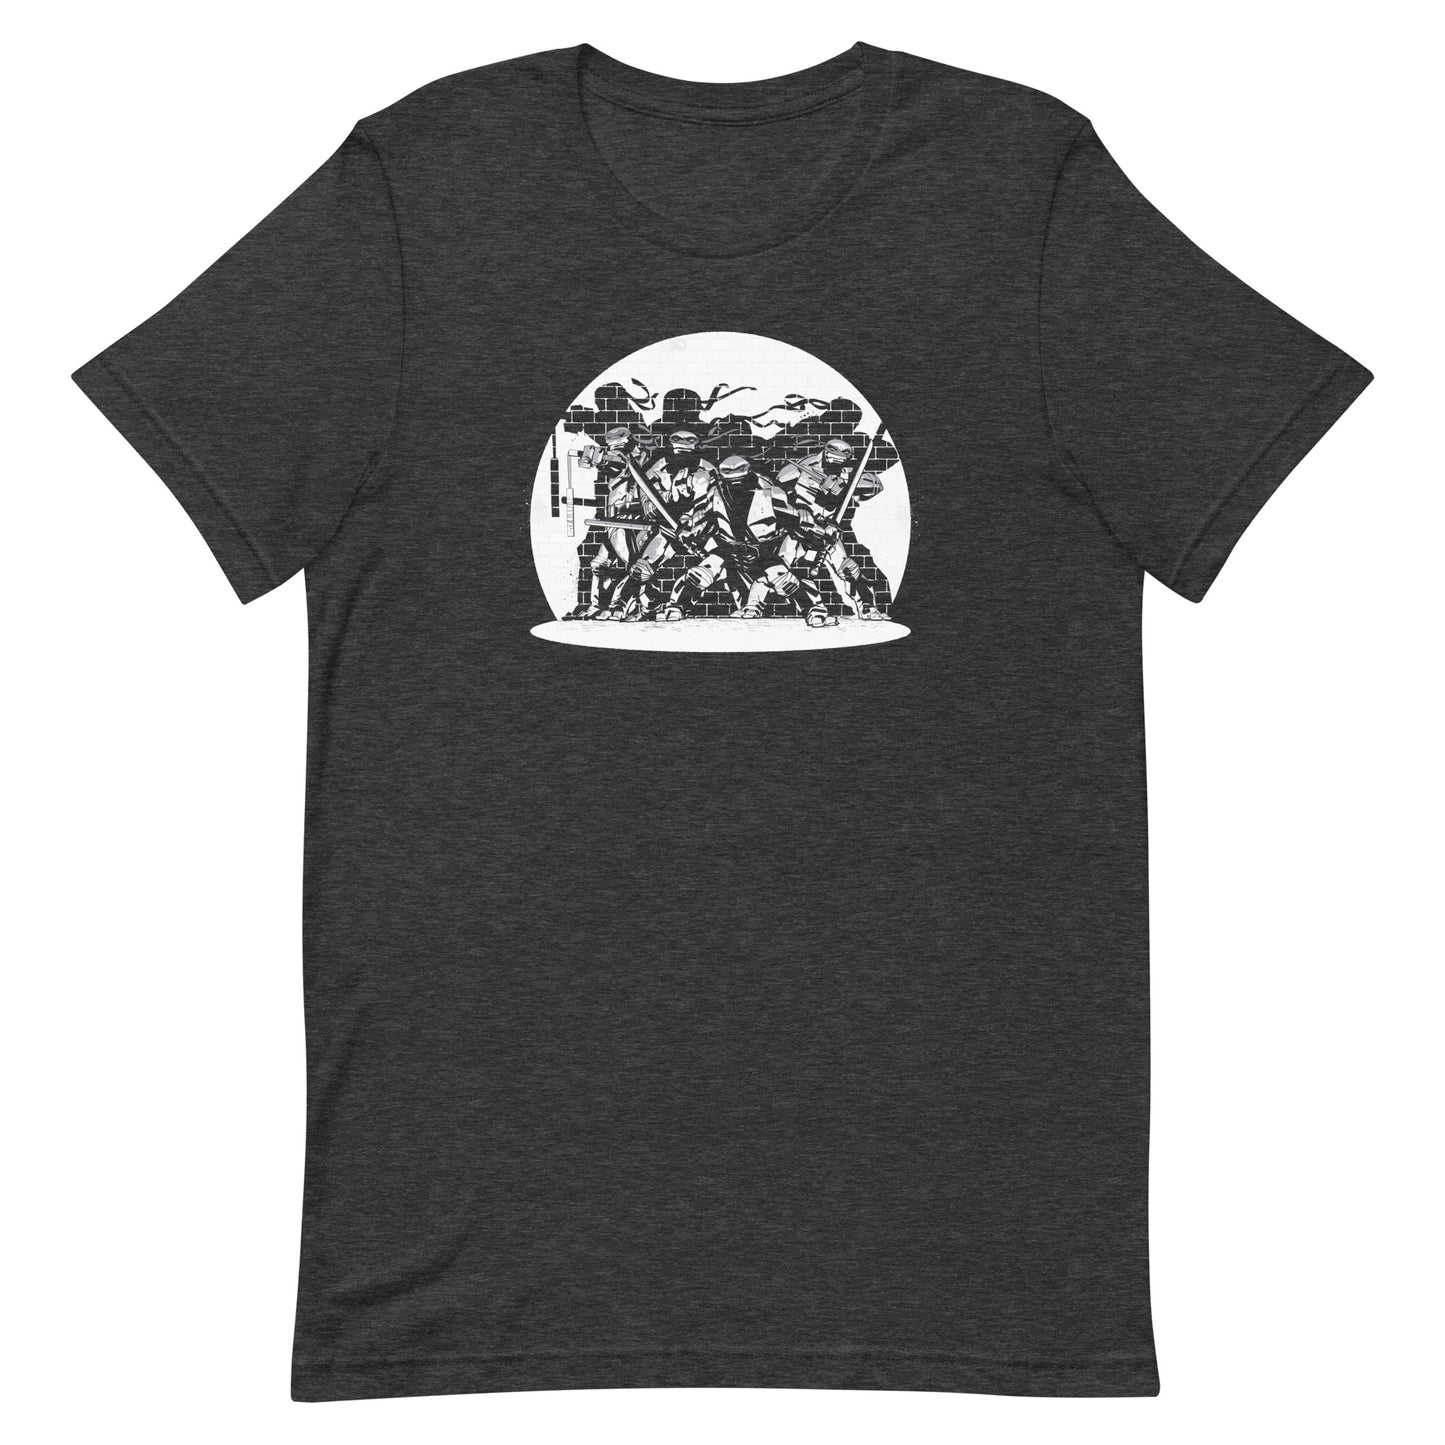 Teenage Mutant Ninja Turtles Comic Art Adult Short Sleeve T-Shirt